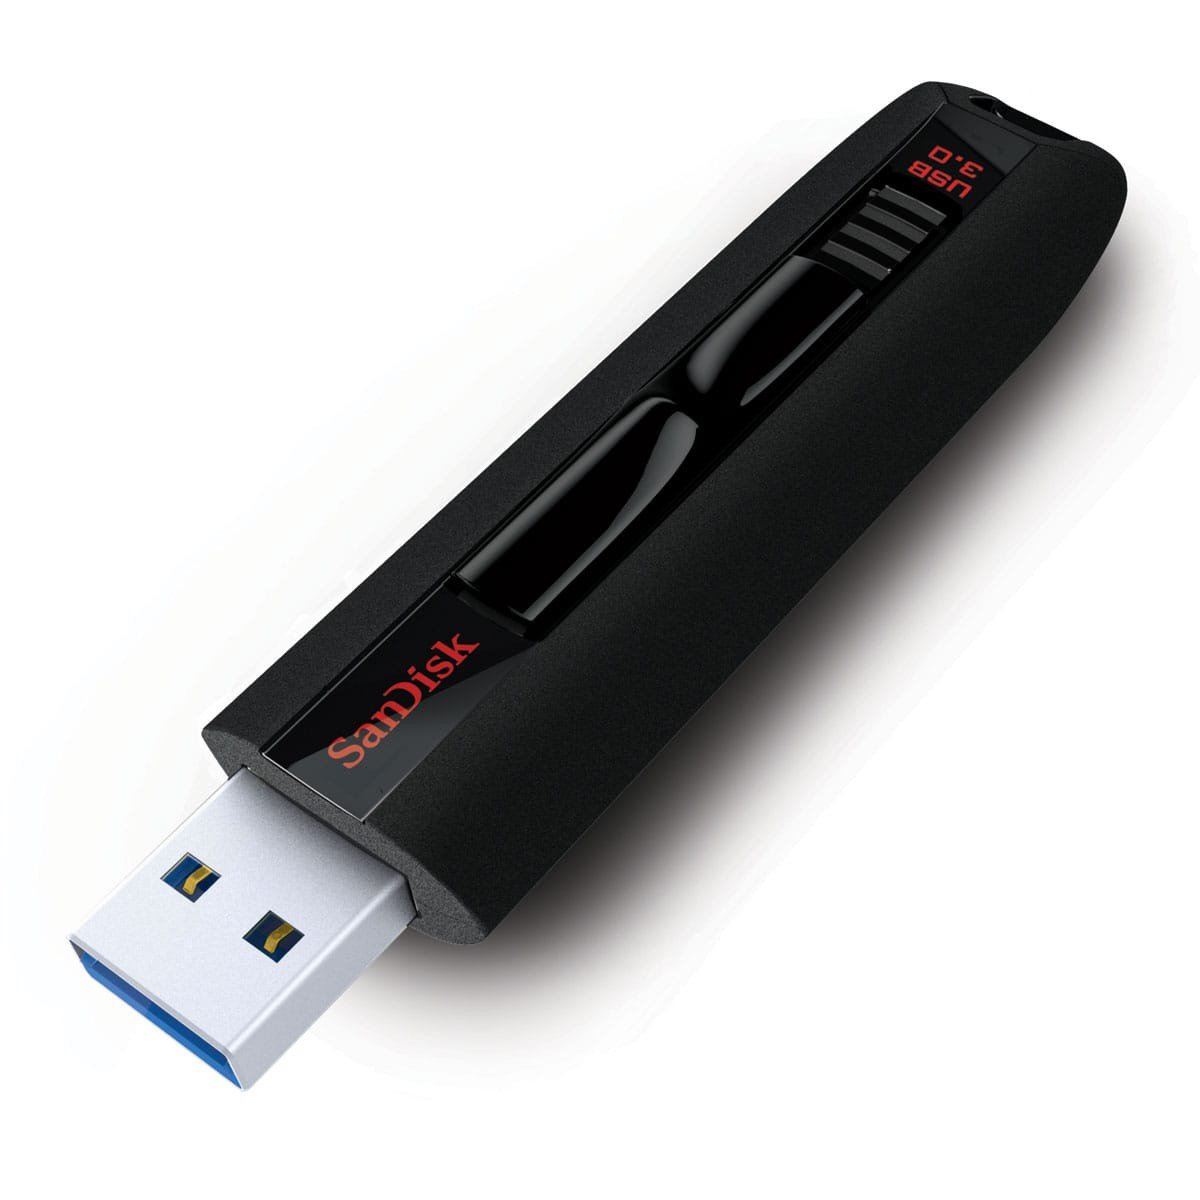 Nouveau lecteur flash 2023, clé USB 3.0 3 en 1, clé USB 3.0 Photo Stick Clé  USB de stockage externe compatible avec l'ordinateur Android Iphone Ipad